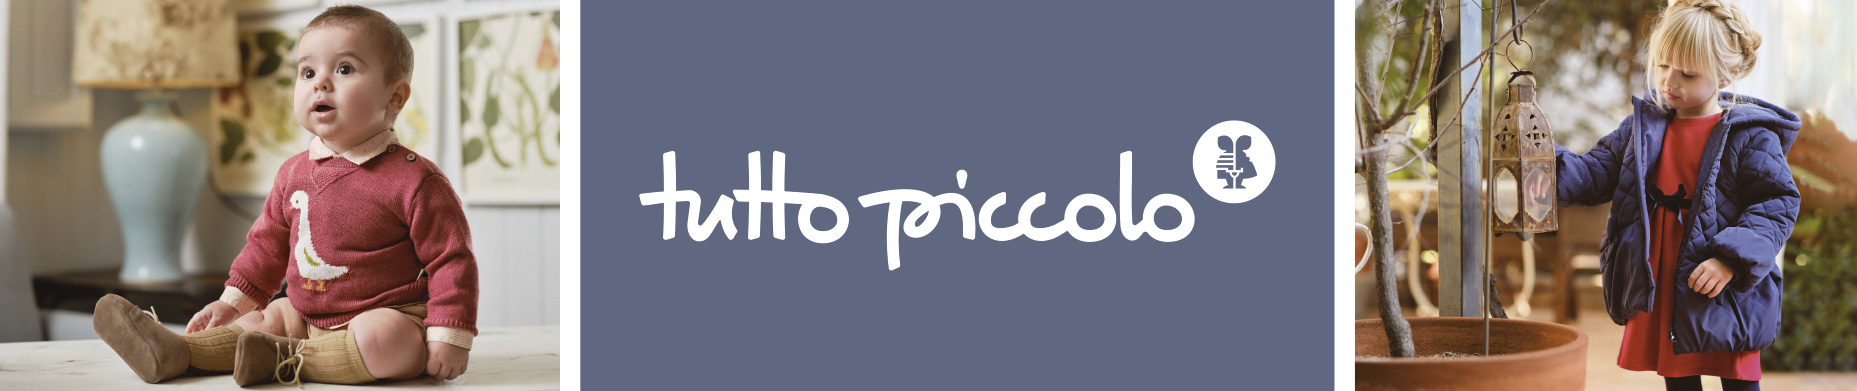 TUTTO PICCOLO-banner